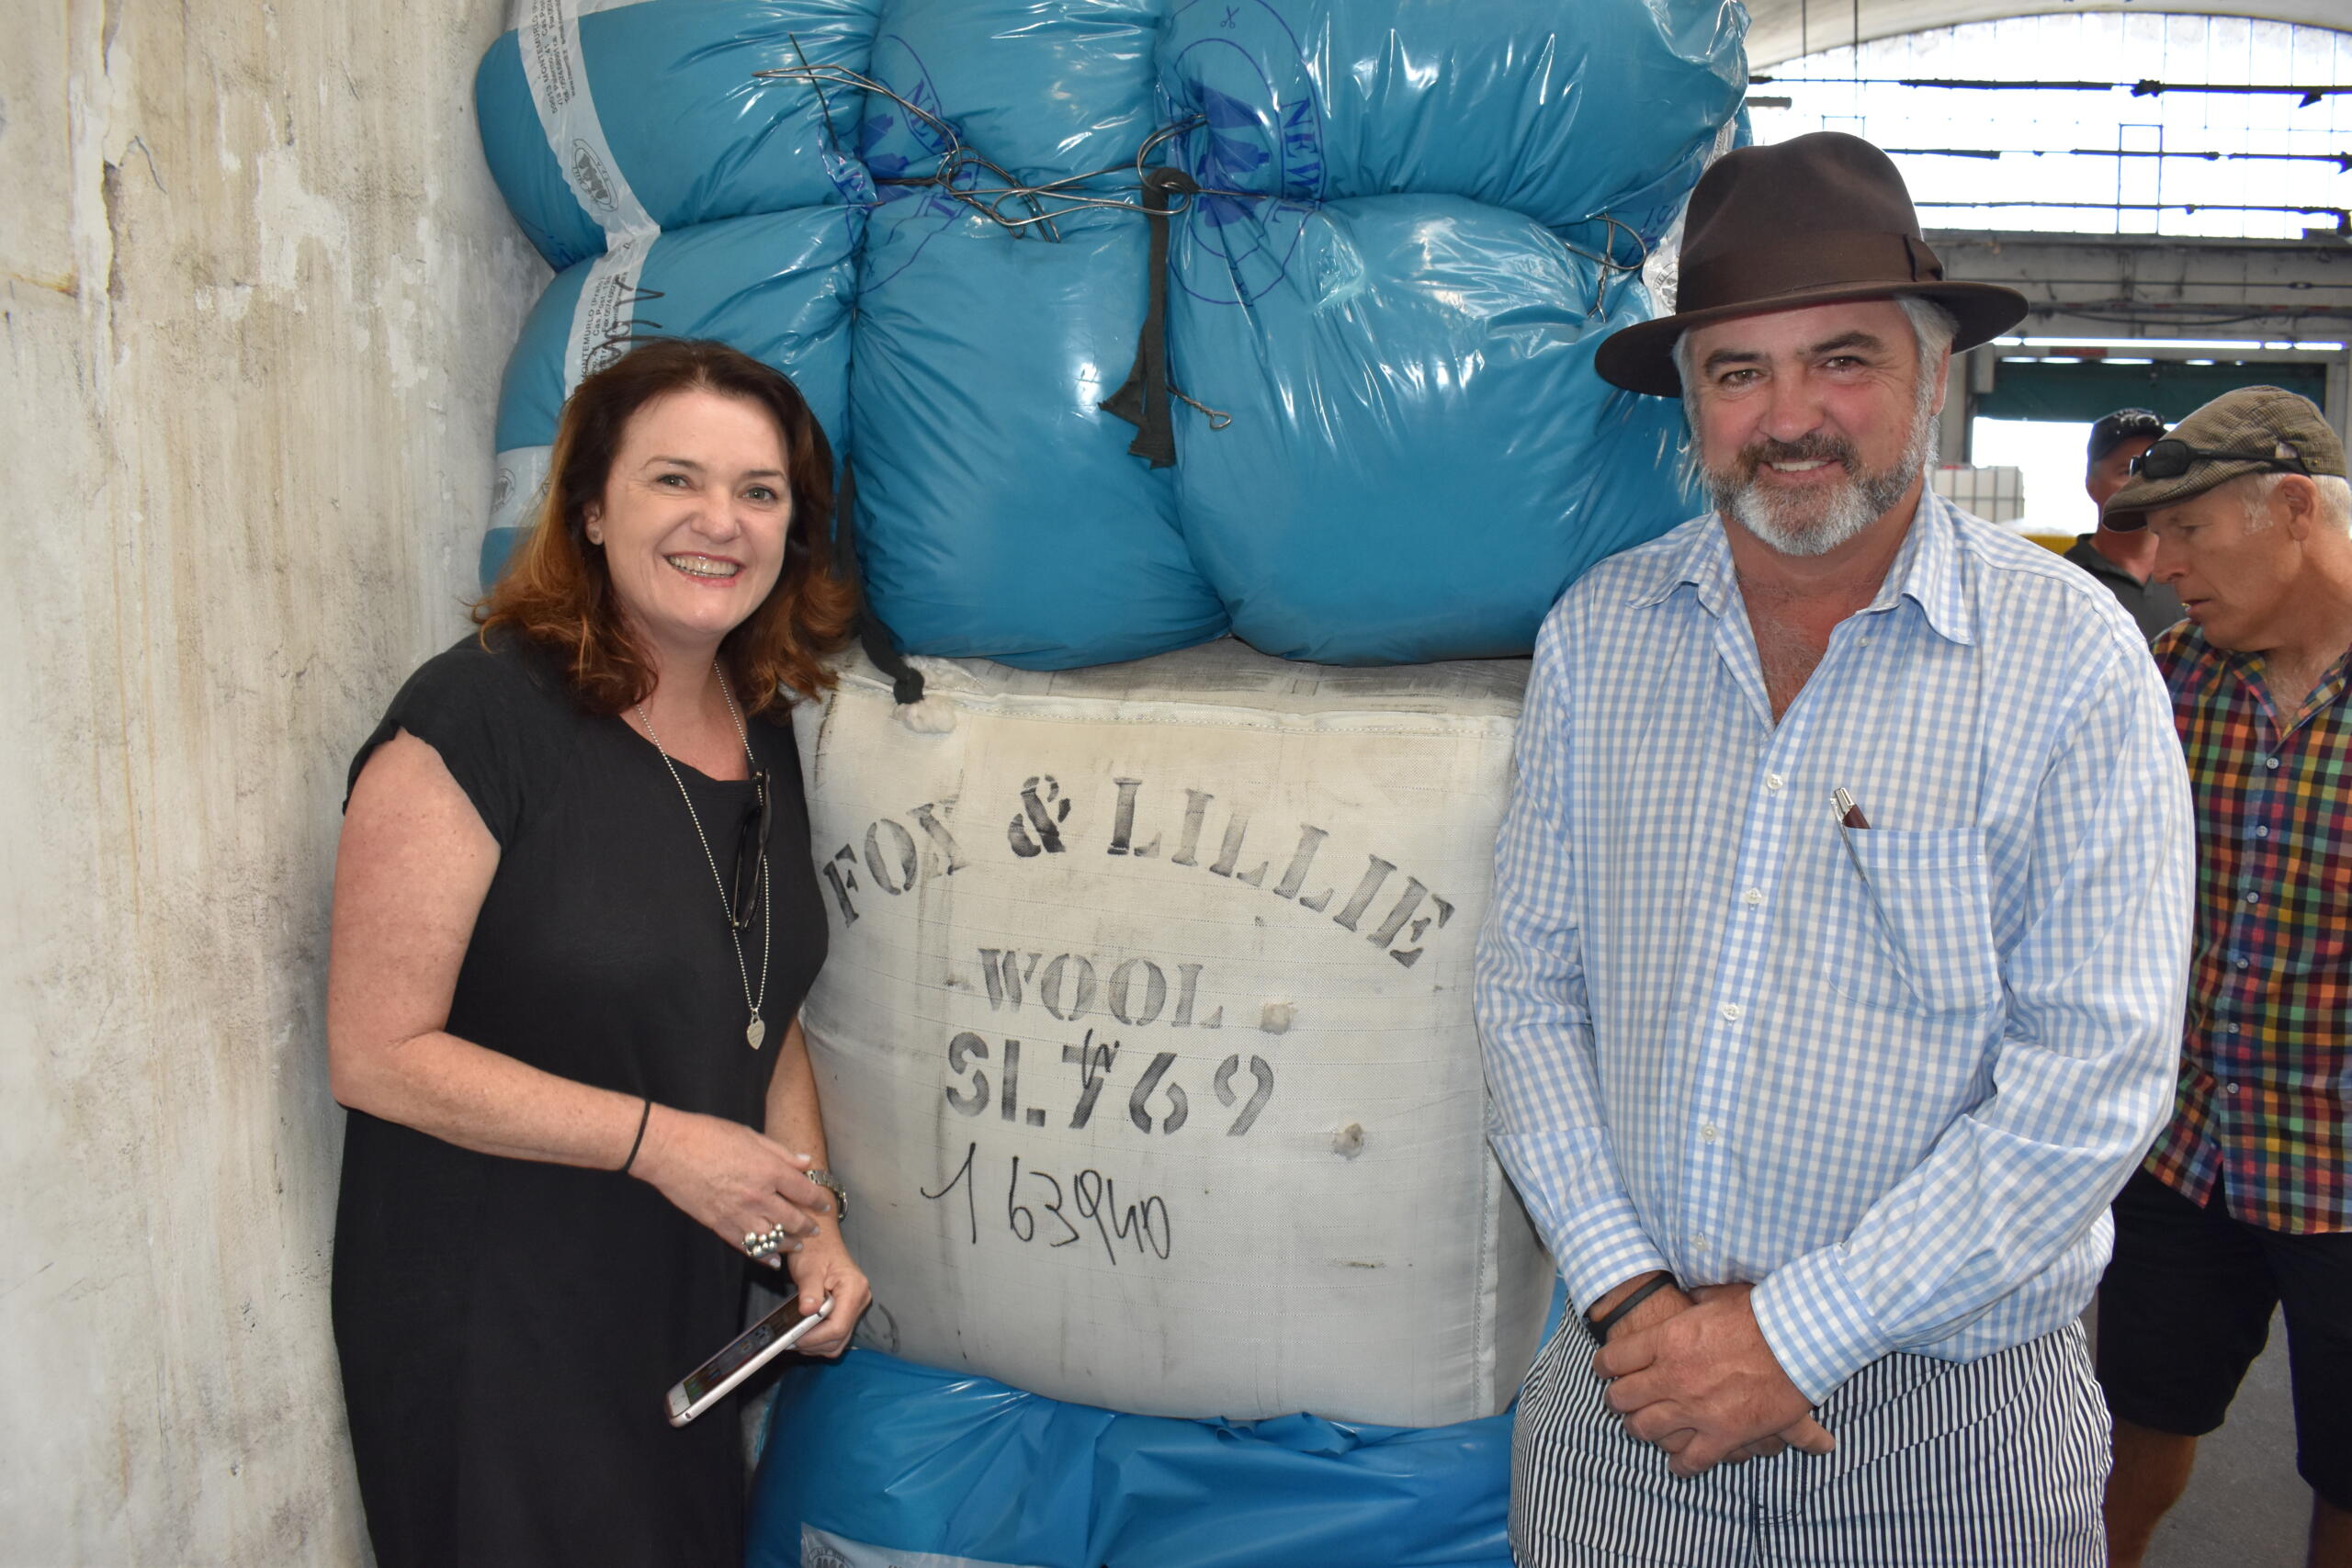 Fox & Lillie branded wool bale in an Italian mill